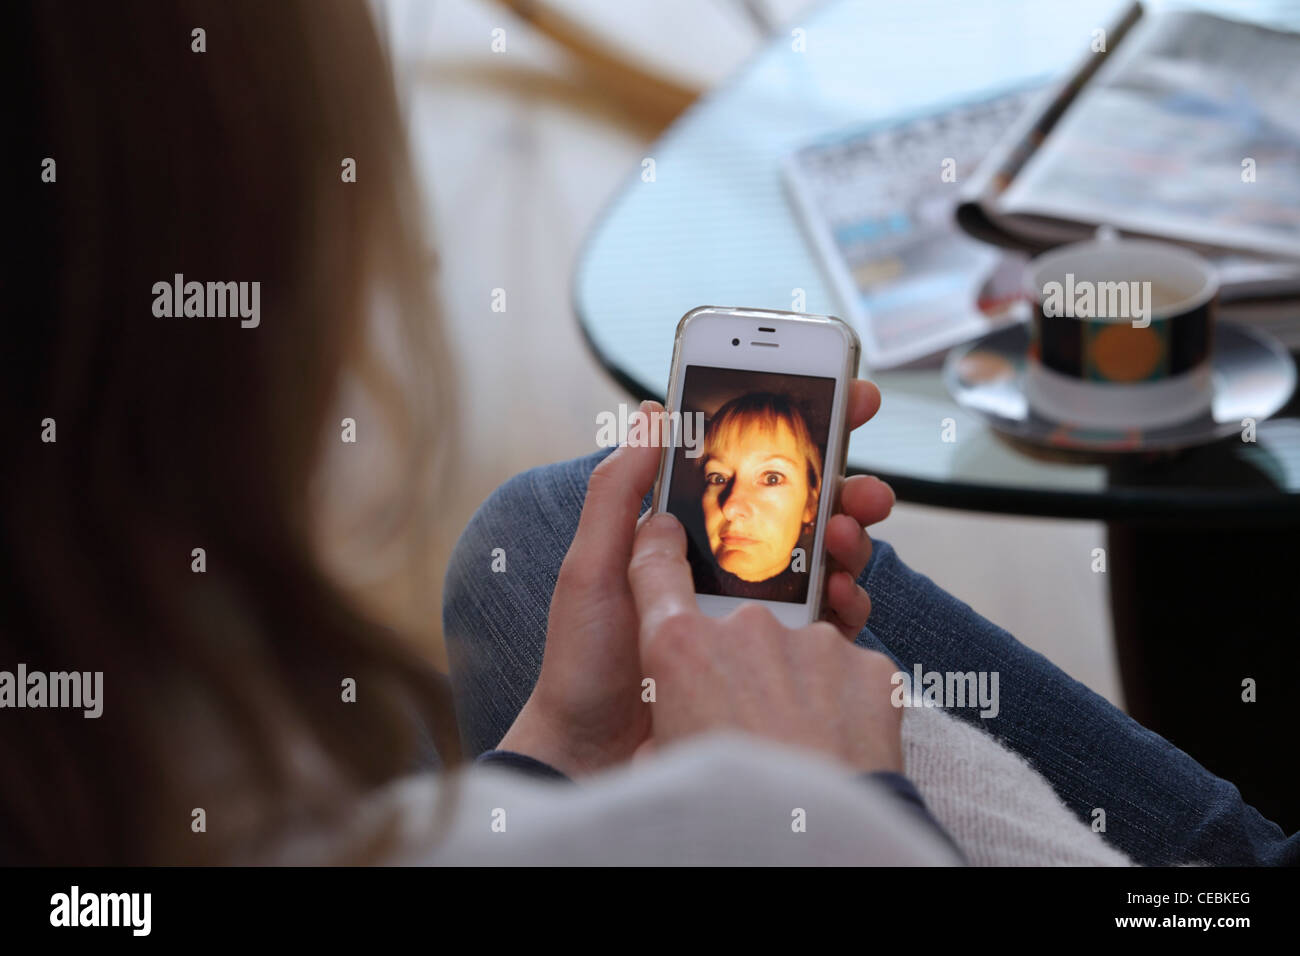 La mujer en el hogar mostrando fotografías en iPhone, Smartphone, close-up, se centran en el teléfono, REINO UNIDO Foto de stock